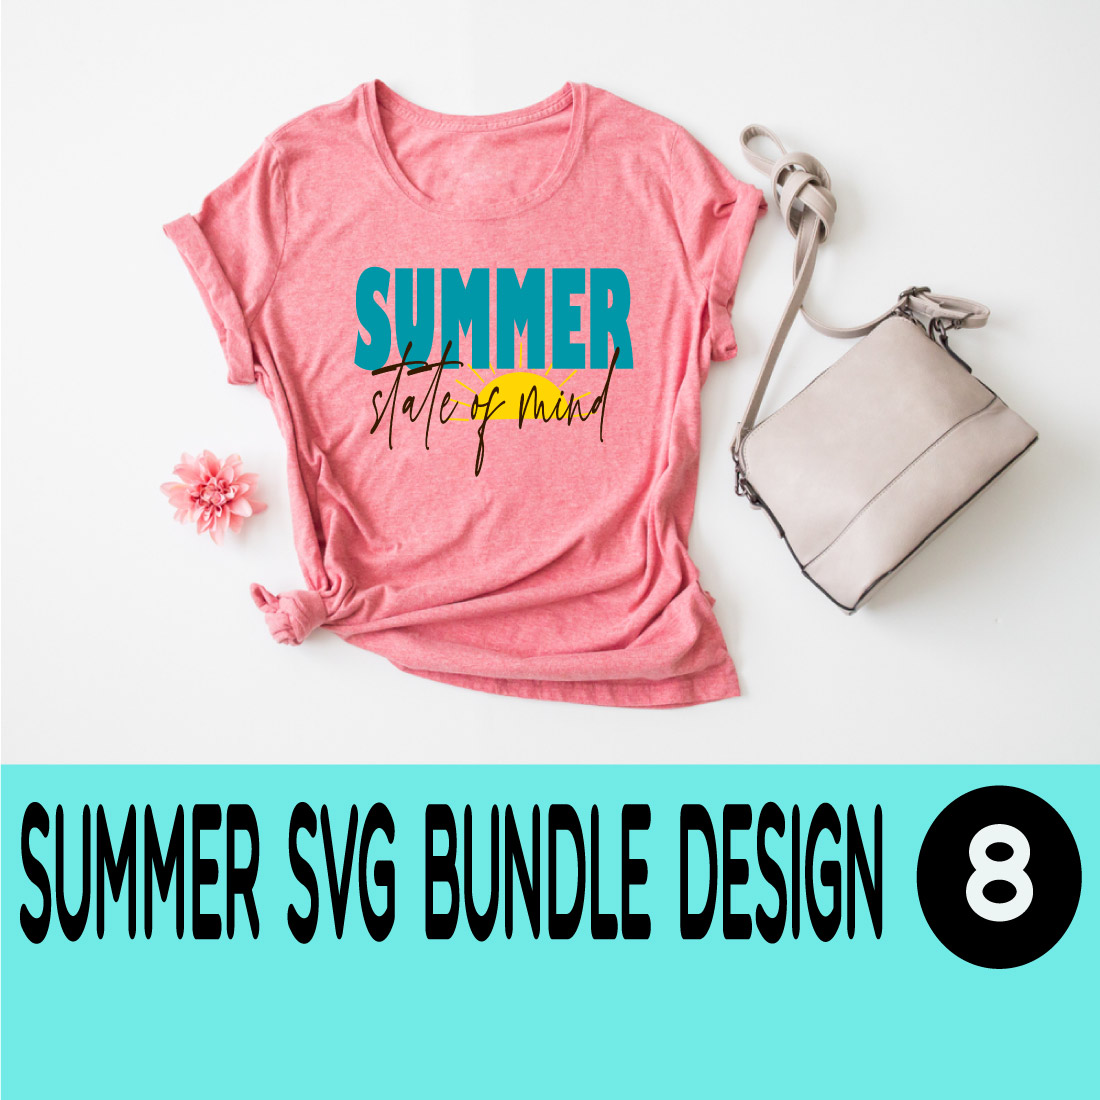 Summer SVG Bundle cover image.